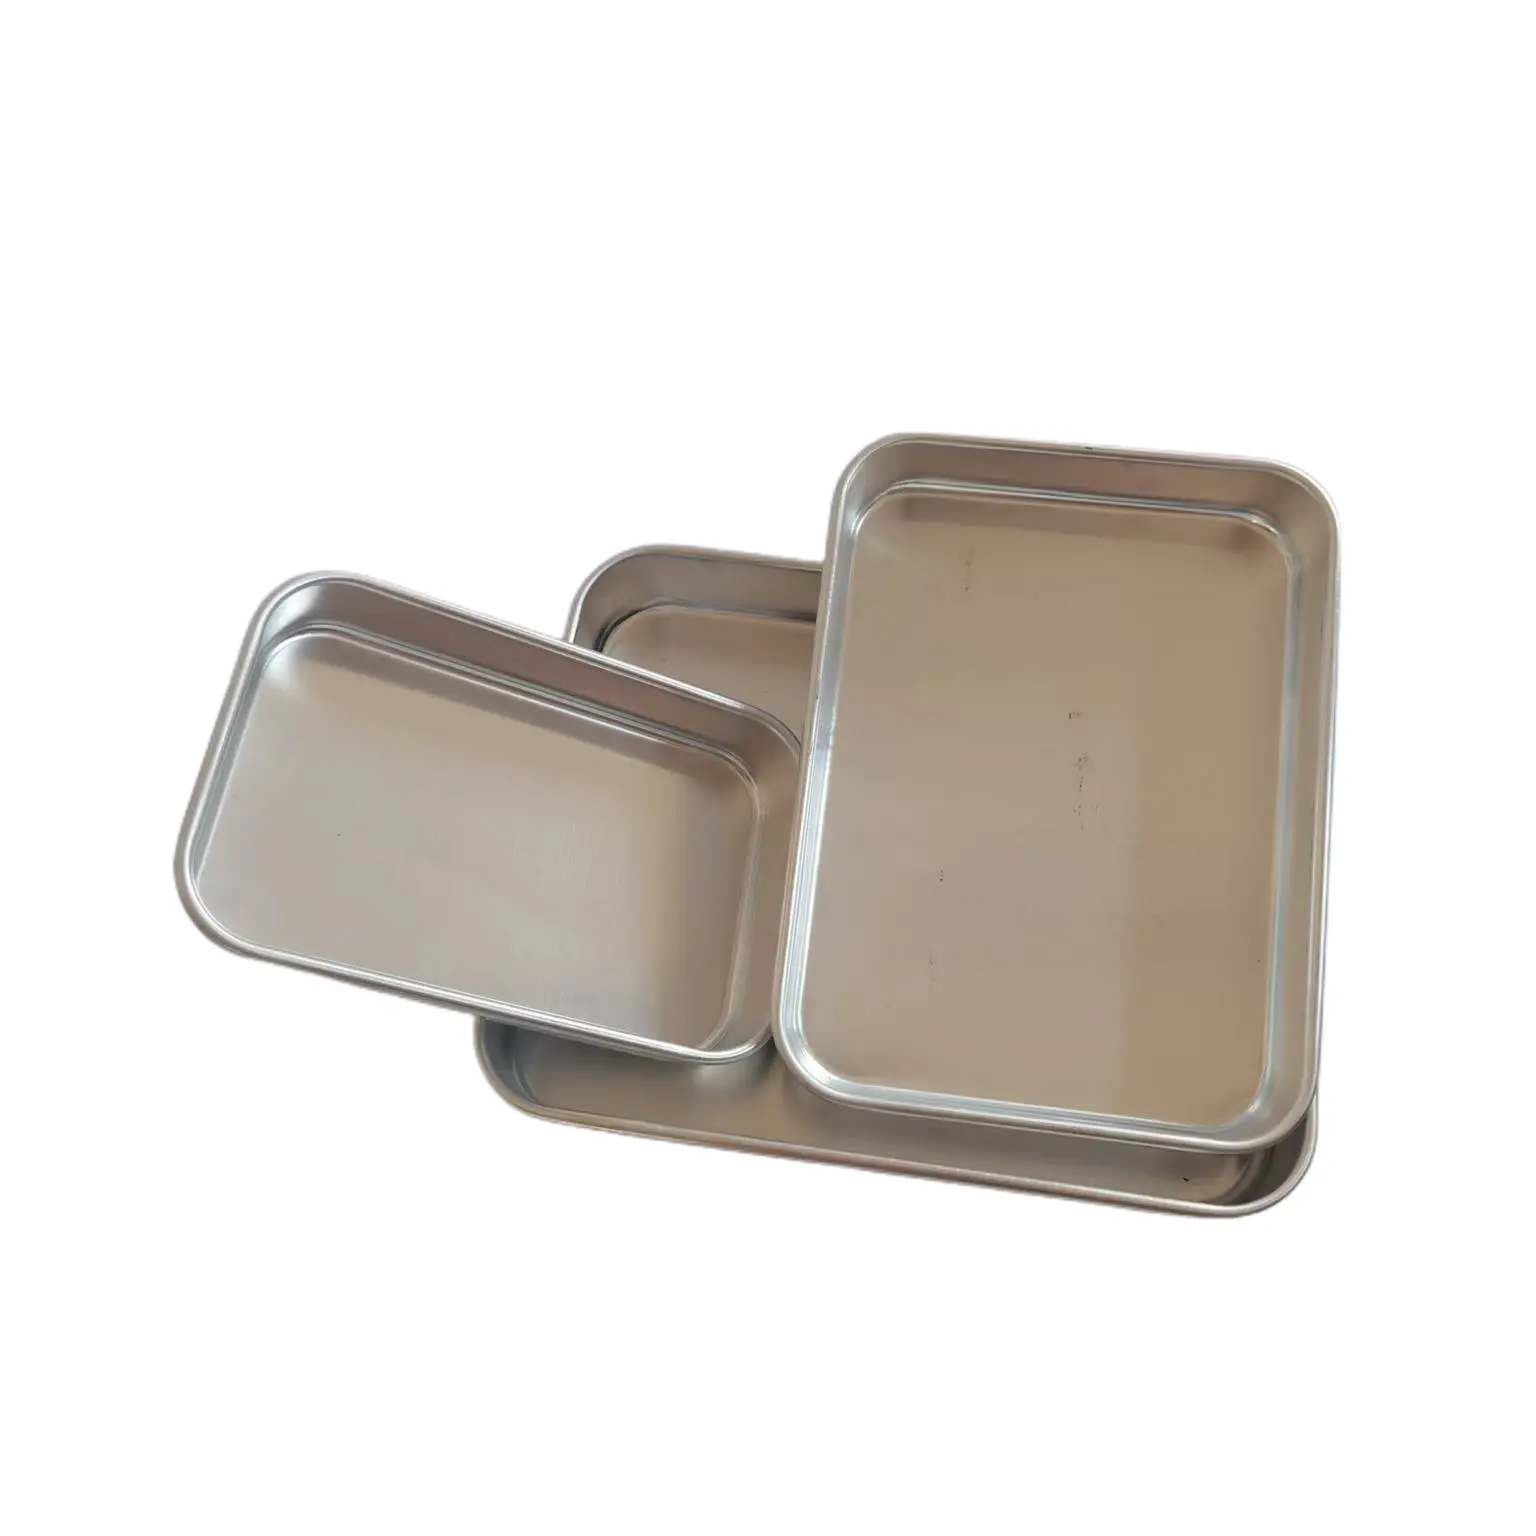 3pcs Non Stick Rectangle Baking Sheet Pan Aluminum Bakeware Bakery Tools Deep Baking Pan Tray